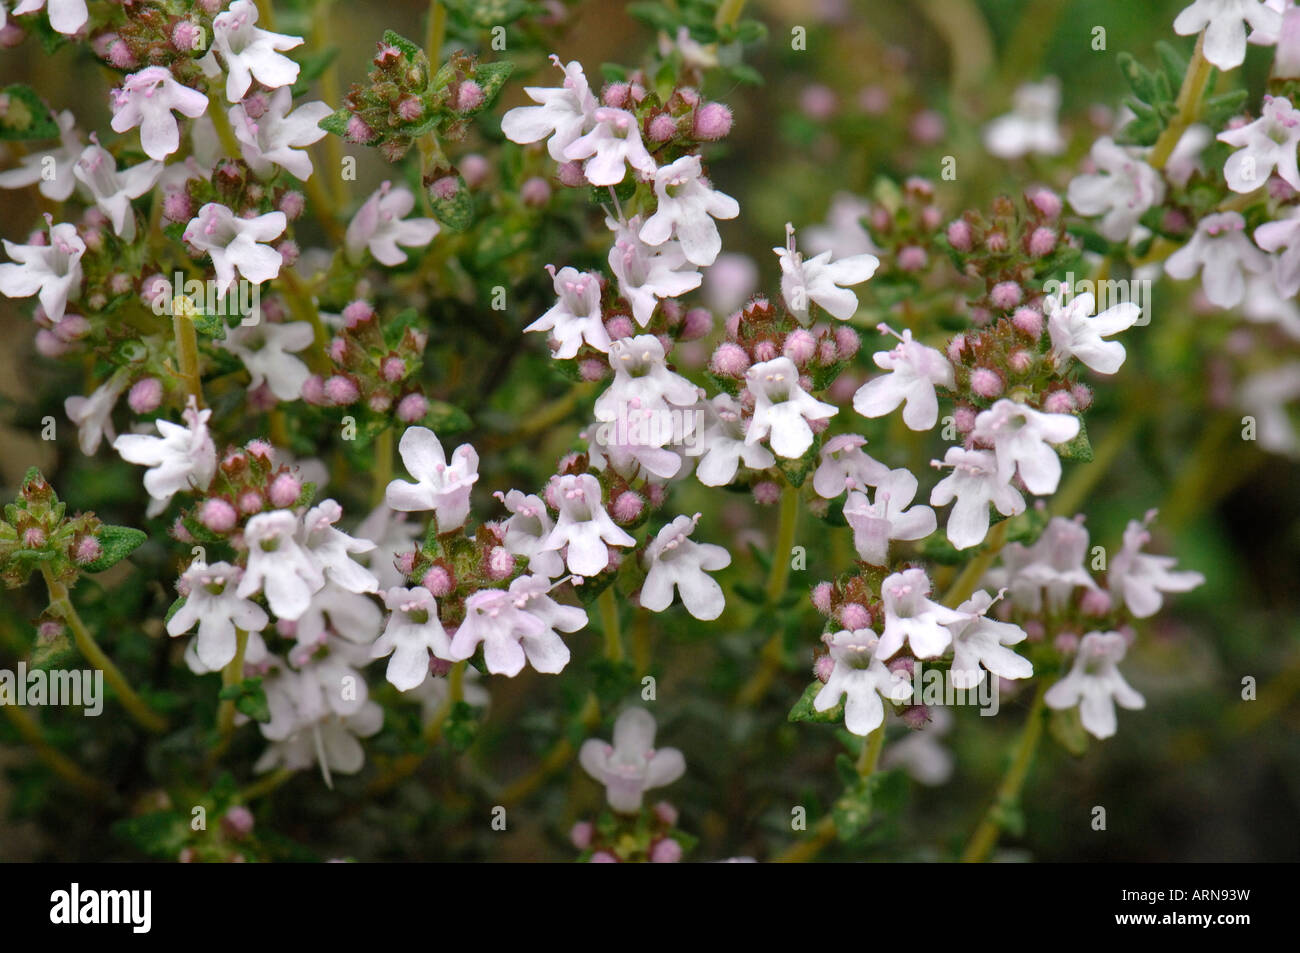 Thyme (Thymus vulgaris), flowering Stock Photo